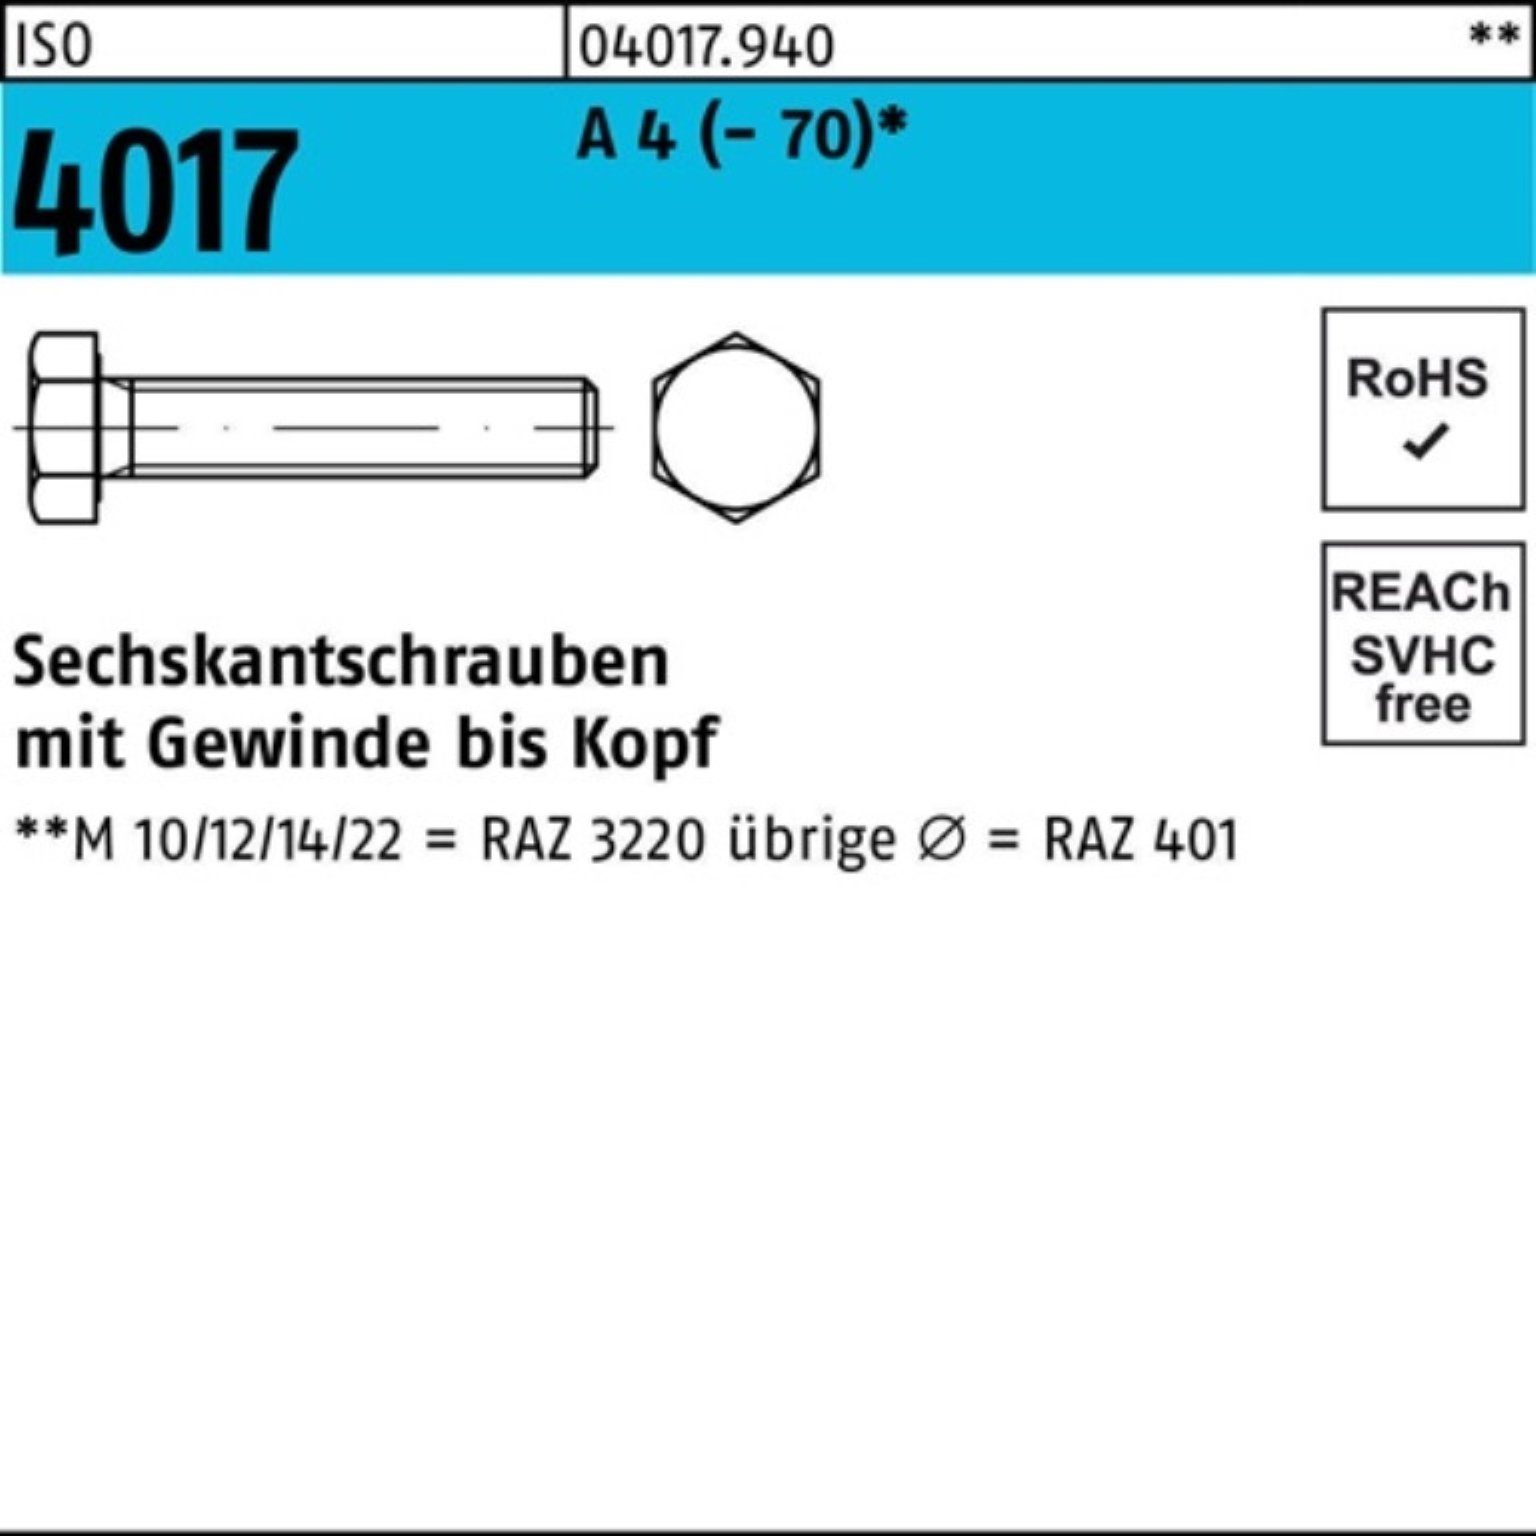 Bufab Sechskantschraube 100er Pack Sechskantschraube ISO 4017 VG M16x 90 A 4 (70) 25 Stück